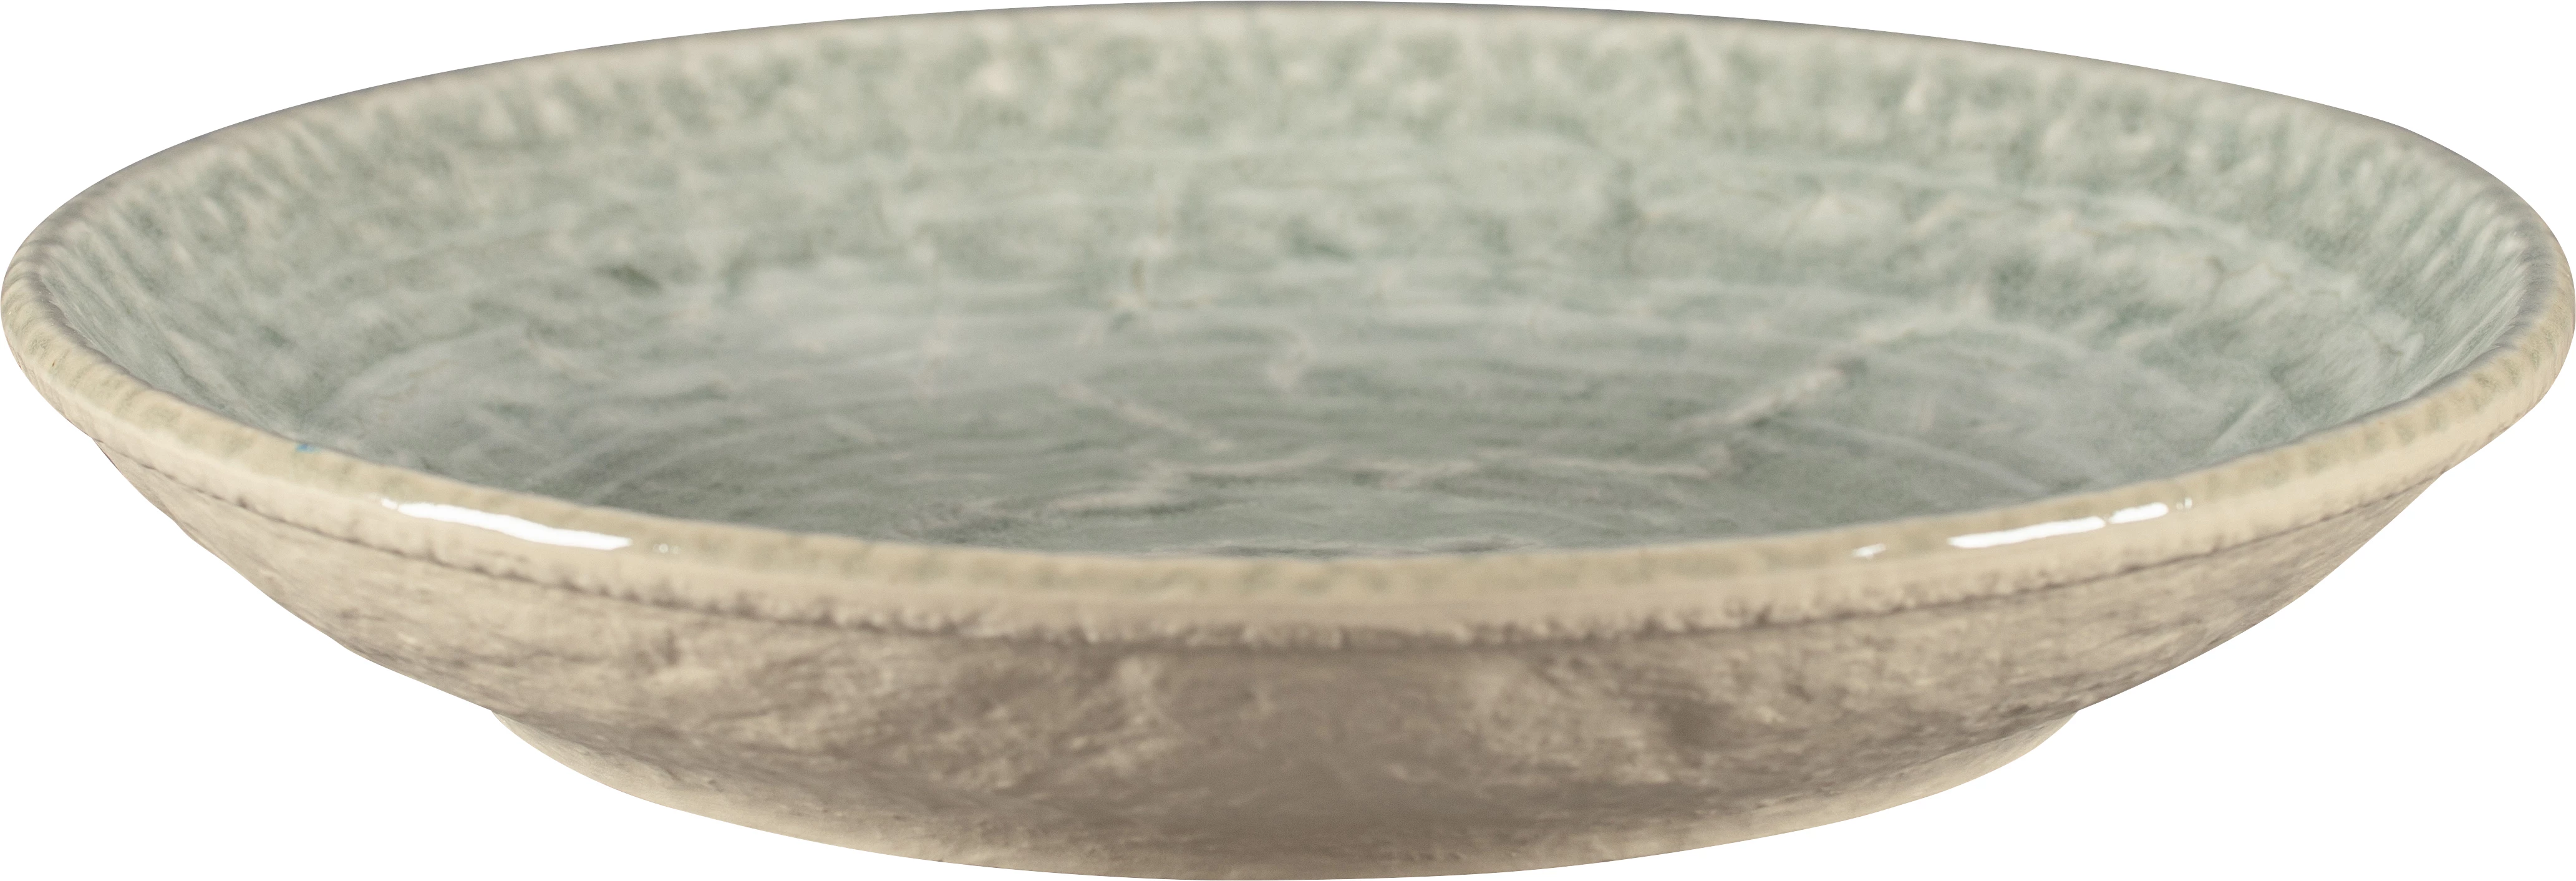 RAK Krush tallerken uden fane, dyb, grå, ø26,1 cm